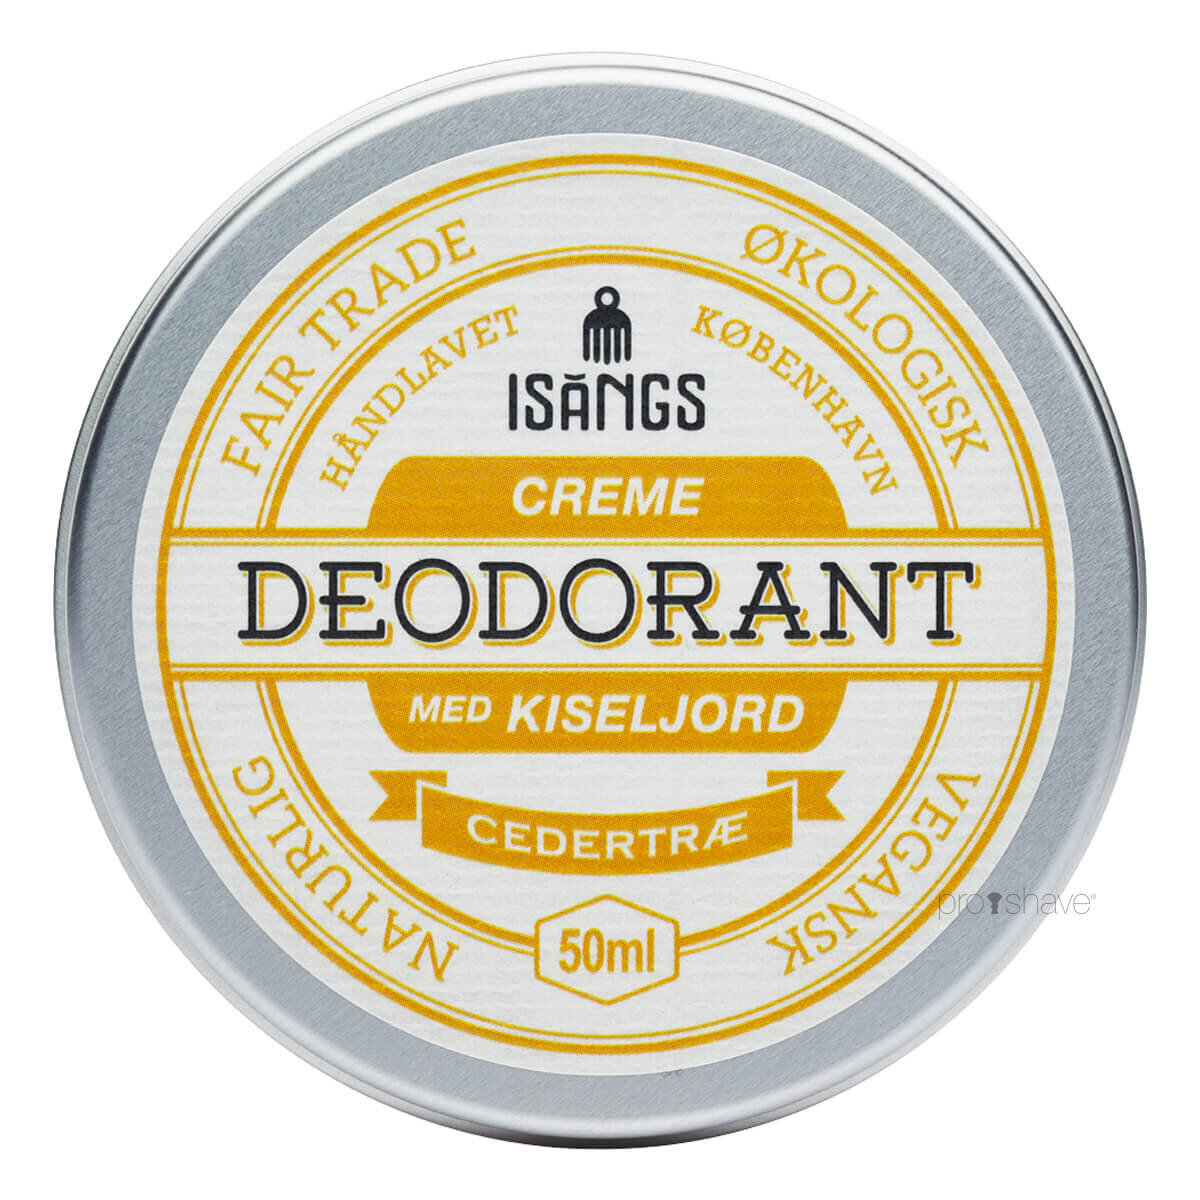 Billede af Isangs Creme Deodorant med Kiseljord, Cedertræ, 50 ml.